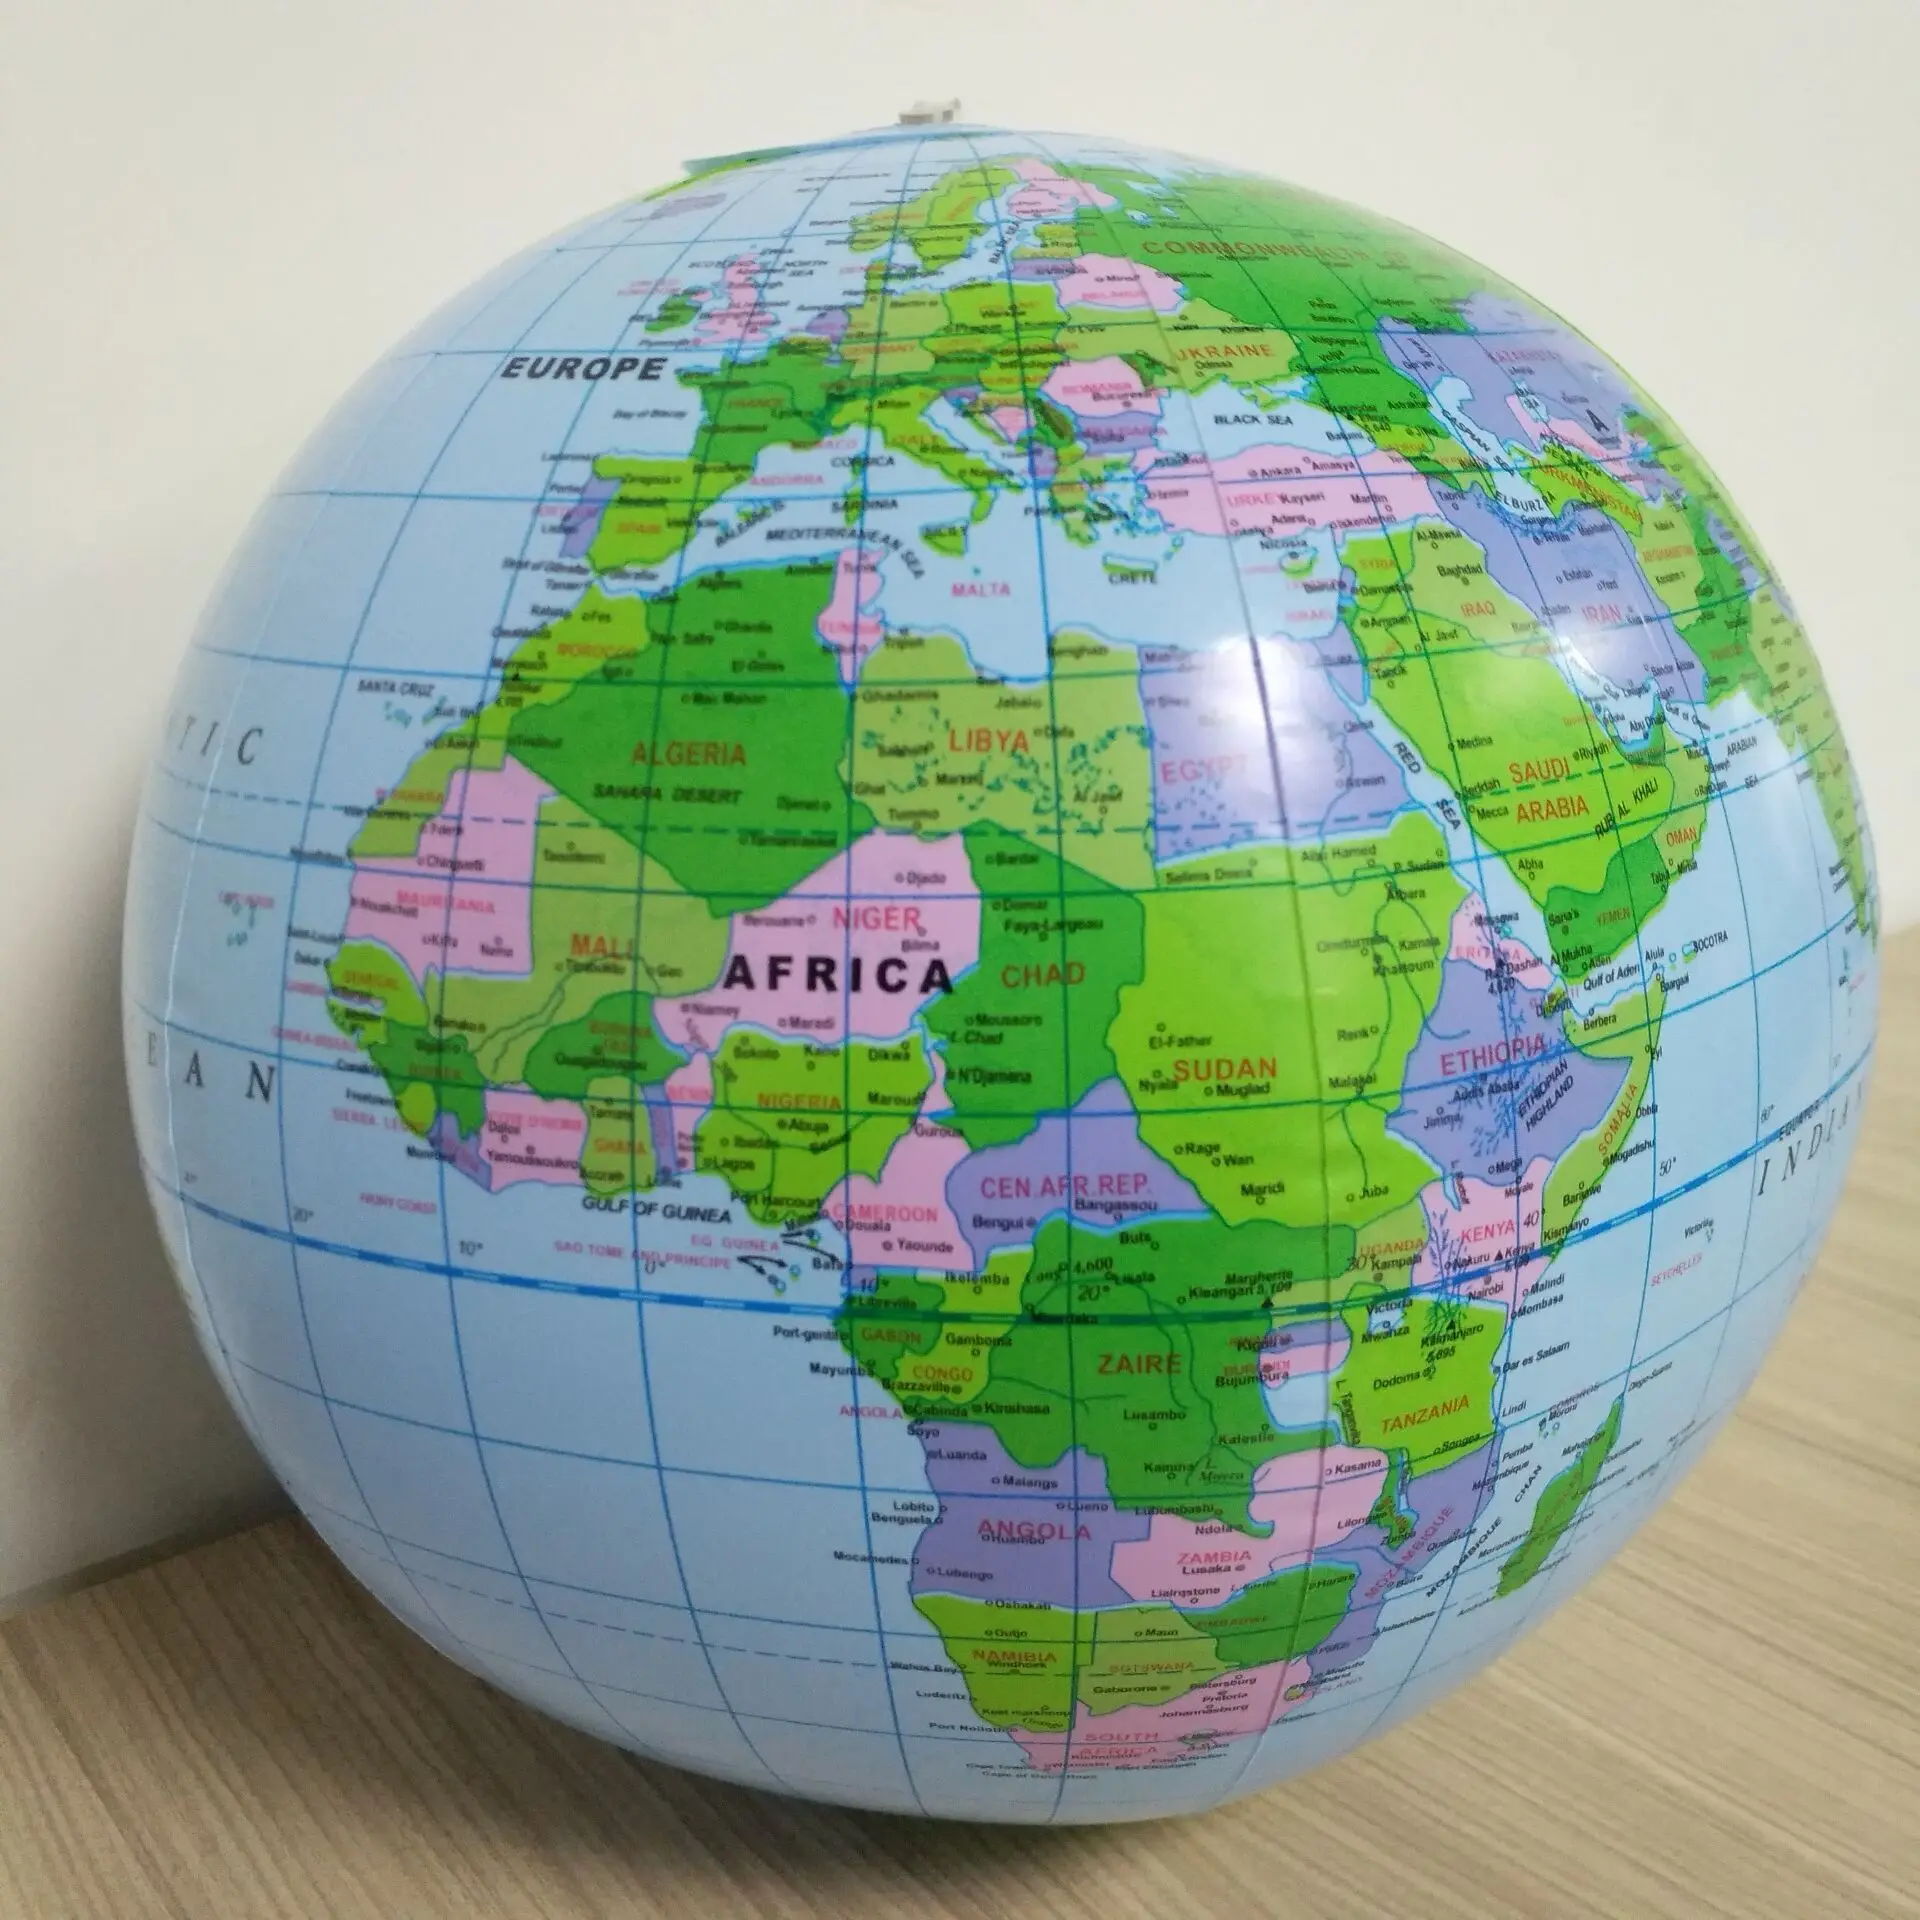 30 см надувной шар мир земля океан карта шар география обучение образовательный пляжный мяч дети география образовательные принадлежности